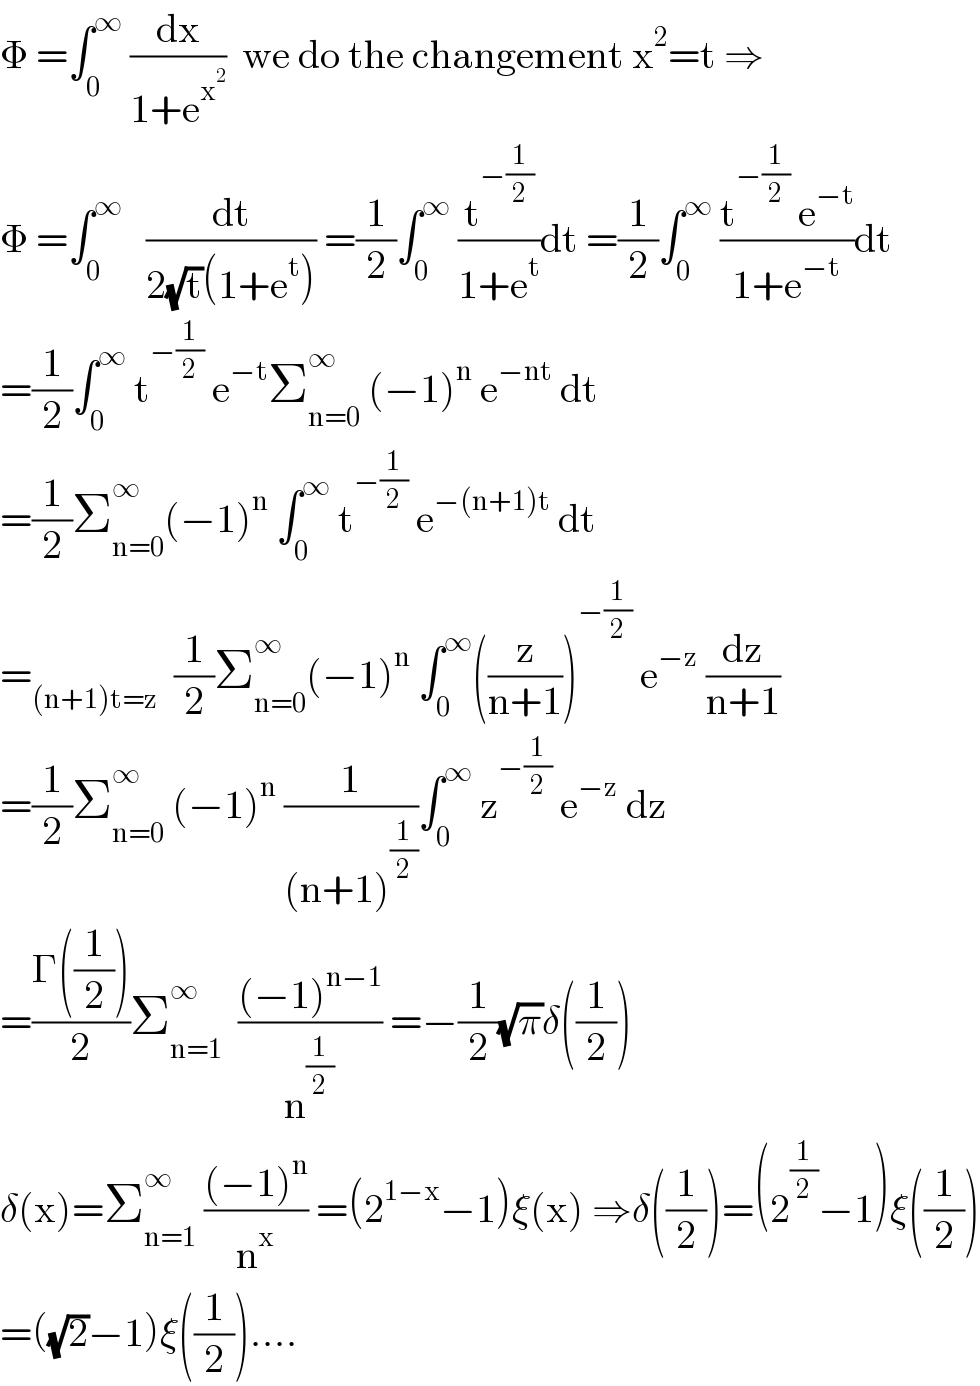 Φ =∫_0 ^∞  (dx/(1+e^x^2  ))  we do the changement x^2 =t ⇒  Φ =∫_0 ^∞    (dt/(2(√t)(1+e^t ))) =(1/2)∫_0 ^∞  (t^(−(1/2)) /(1+e^t ))dt =(1/2)∫_0 ^∞  ((t^(−(1/2))  e^(−t) )/(1+e^(−t) ))dt  =(1/2)∫_0 ^∞  t^(−(1/2))  e^(−t) Σ_(n=0) ^∞  (−1)^n  e^(−nt)  dt  =(1/2)Σ_(n=0) ^∞ (−1)^n  ∫_0 ^∞  t^(−(1/2))  e^(−(n+1)t)  dt  =_((n+1)t=z)   (1/2)Σ_(n=0) ^(∞ ) (−1)^n  ∫_0 ^∞ ((z/(n+1)))^(−(1/2))  e^(−z)  (dz/(n+1))  =(1/2)Σ_(n=0) ^∞  (−1)^n  (1/((n+1)^(1/2) ))∫_0 ^∞  z^(−(1/2))  e^(−z)  dz  =((Γ((1/2)))/2)Σ_(n=1) ^(∞ )   (((−1)^(n−1) )/n^(1/2) ) =−(1/2)(√π)δ((1/2))  δ(x)=Σ_(n=1) ^∞  (((−1)^n )/n^x ) =(2^(1−x) −1)ξ(x) ⇒δ((1/2))=(2^(1/2) −1)ξ((1/2))  =((√2)−1)ξ((1/2))....  